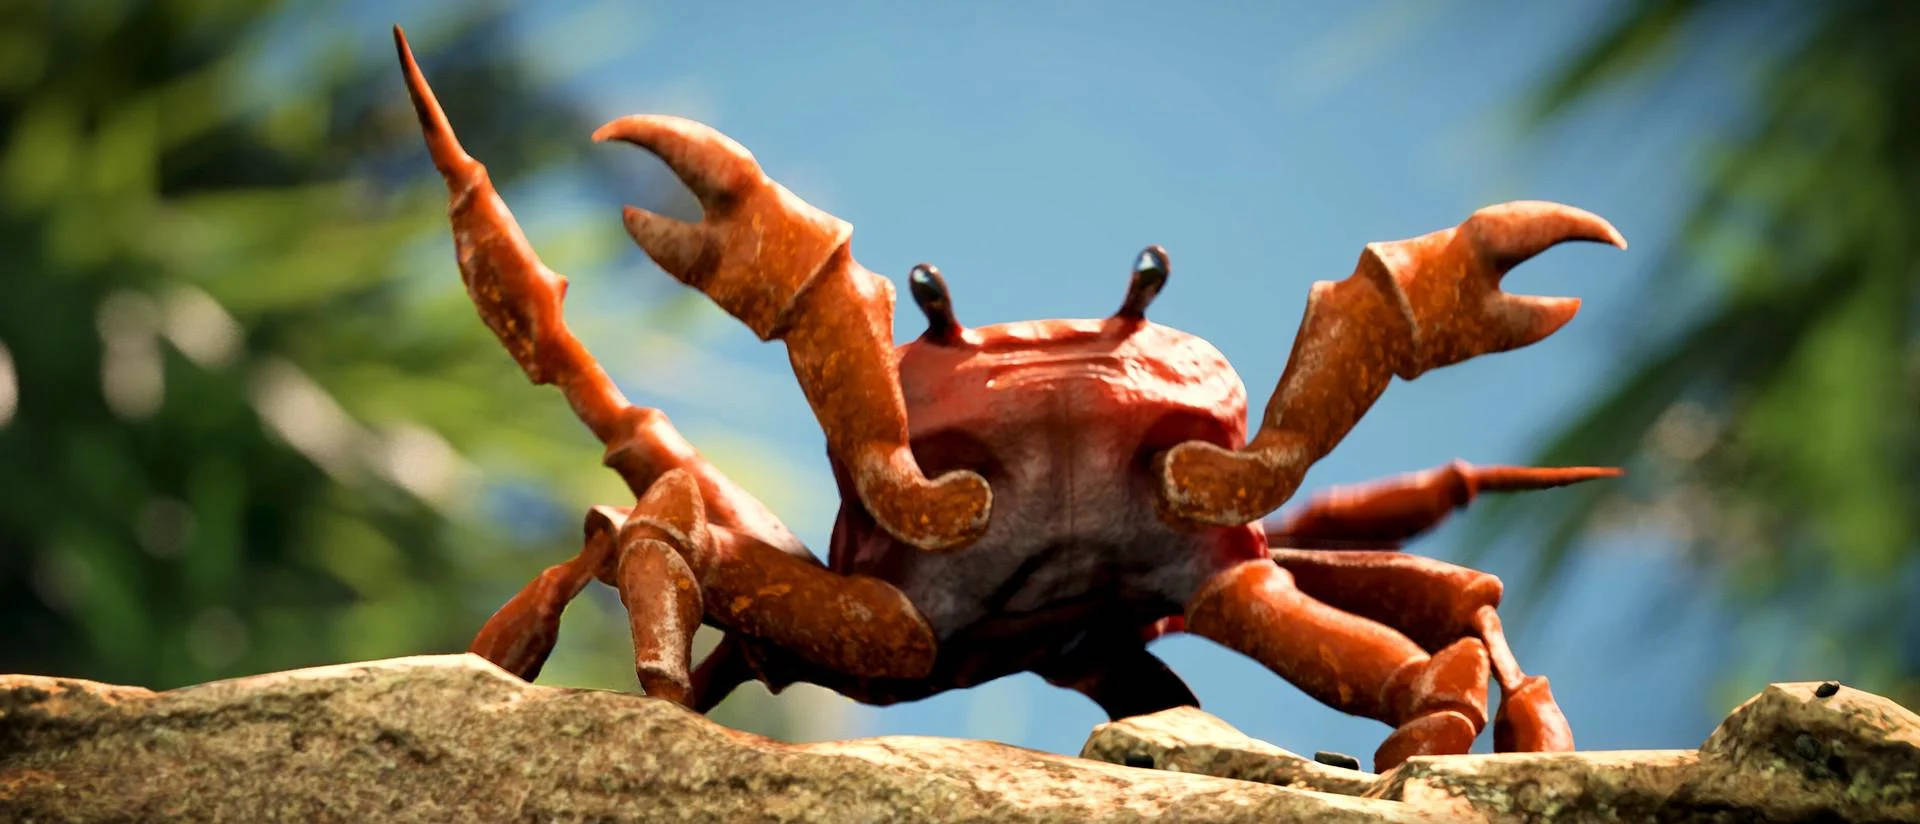 Crab On A Rock Wallpaper